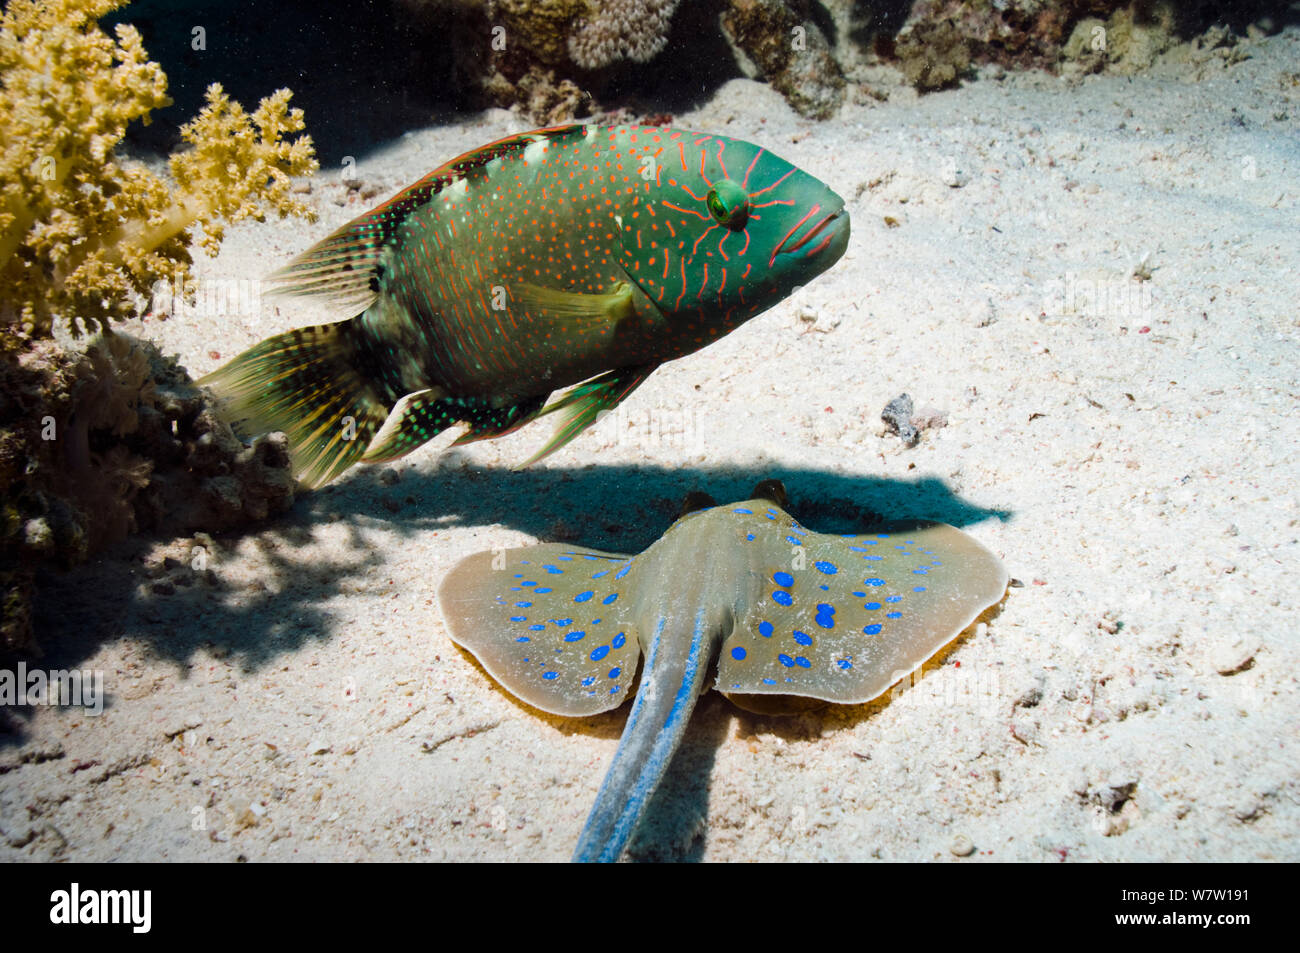 Abudjubbe lippfisch (Cheilinus abudjubbe) endemische Arten, mit einem ribbontail ray Blaupunktrochen (Taeniura lymna) Graben in sandigen Boden, in der Hoffnung, dass auslaufendes Beute zu fangen. Ägypten, Rotes Meer. Stockfoto